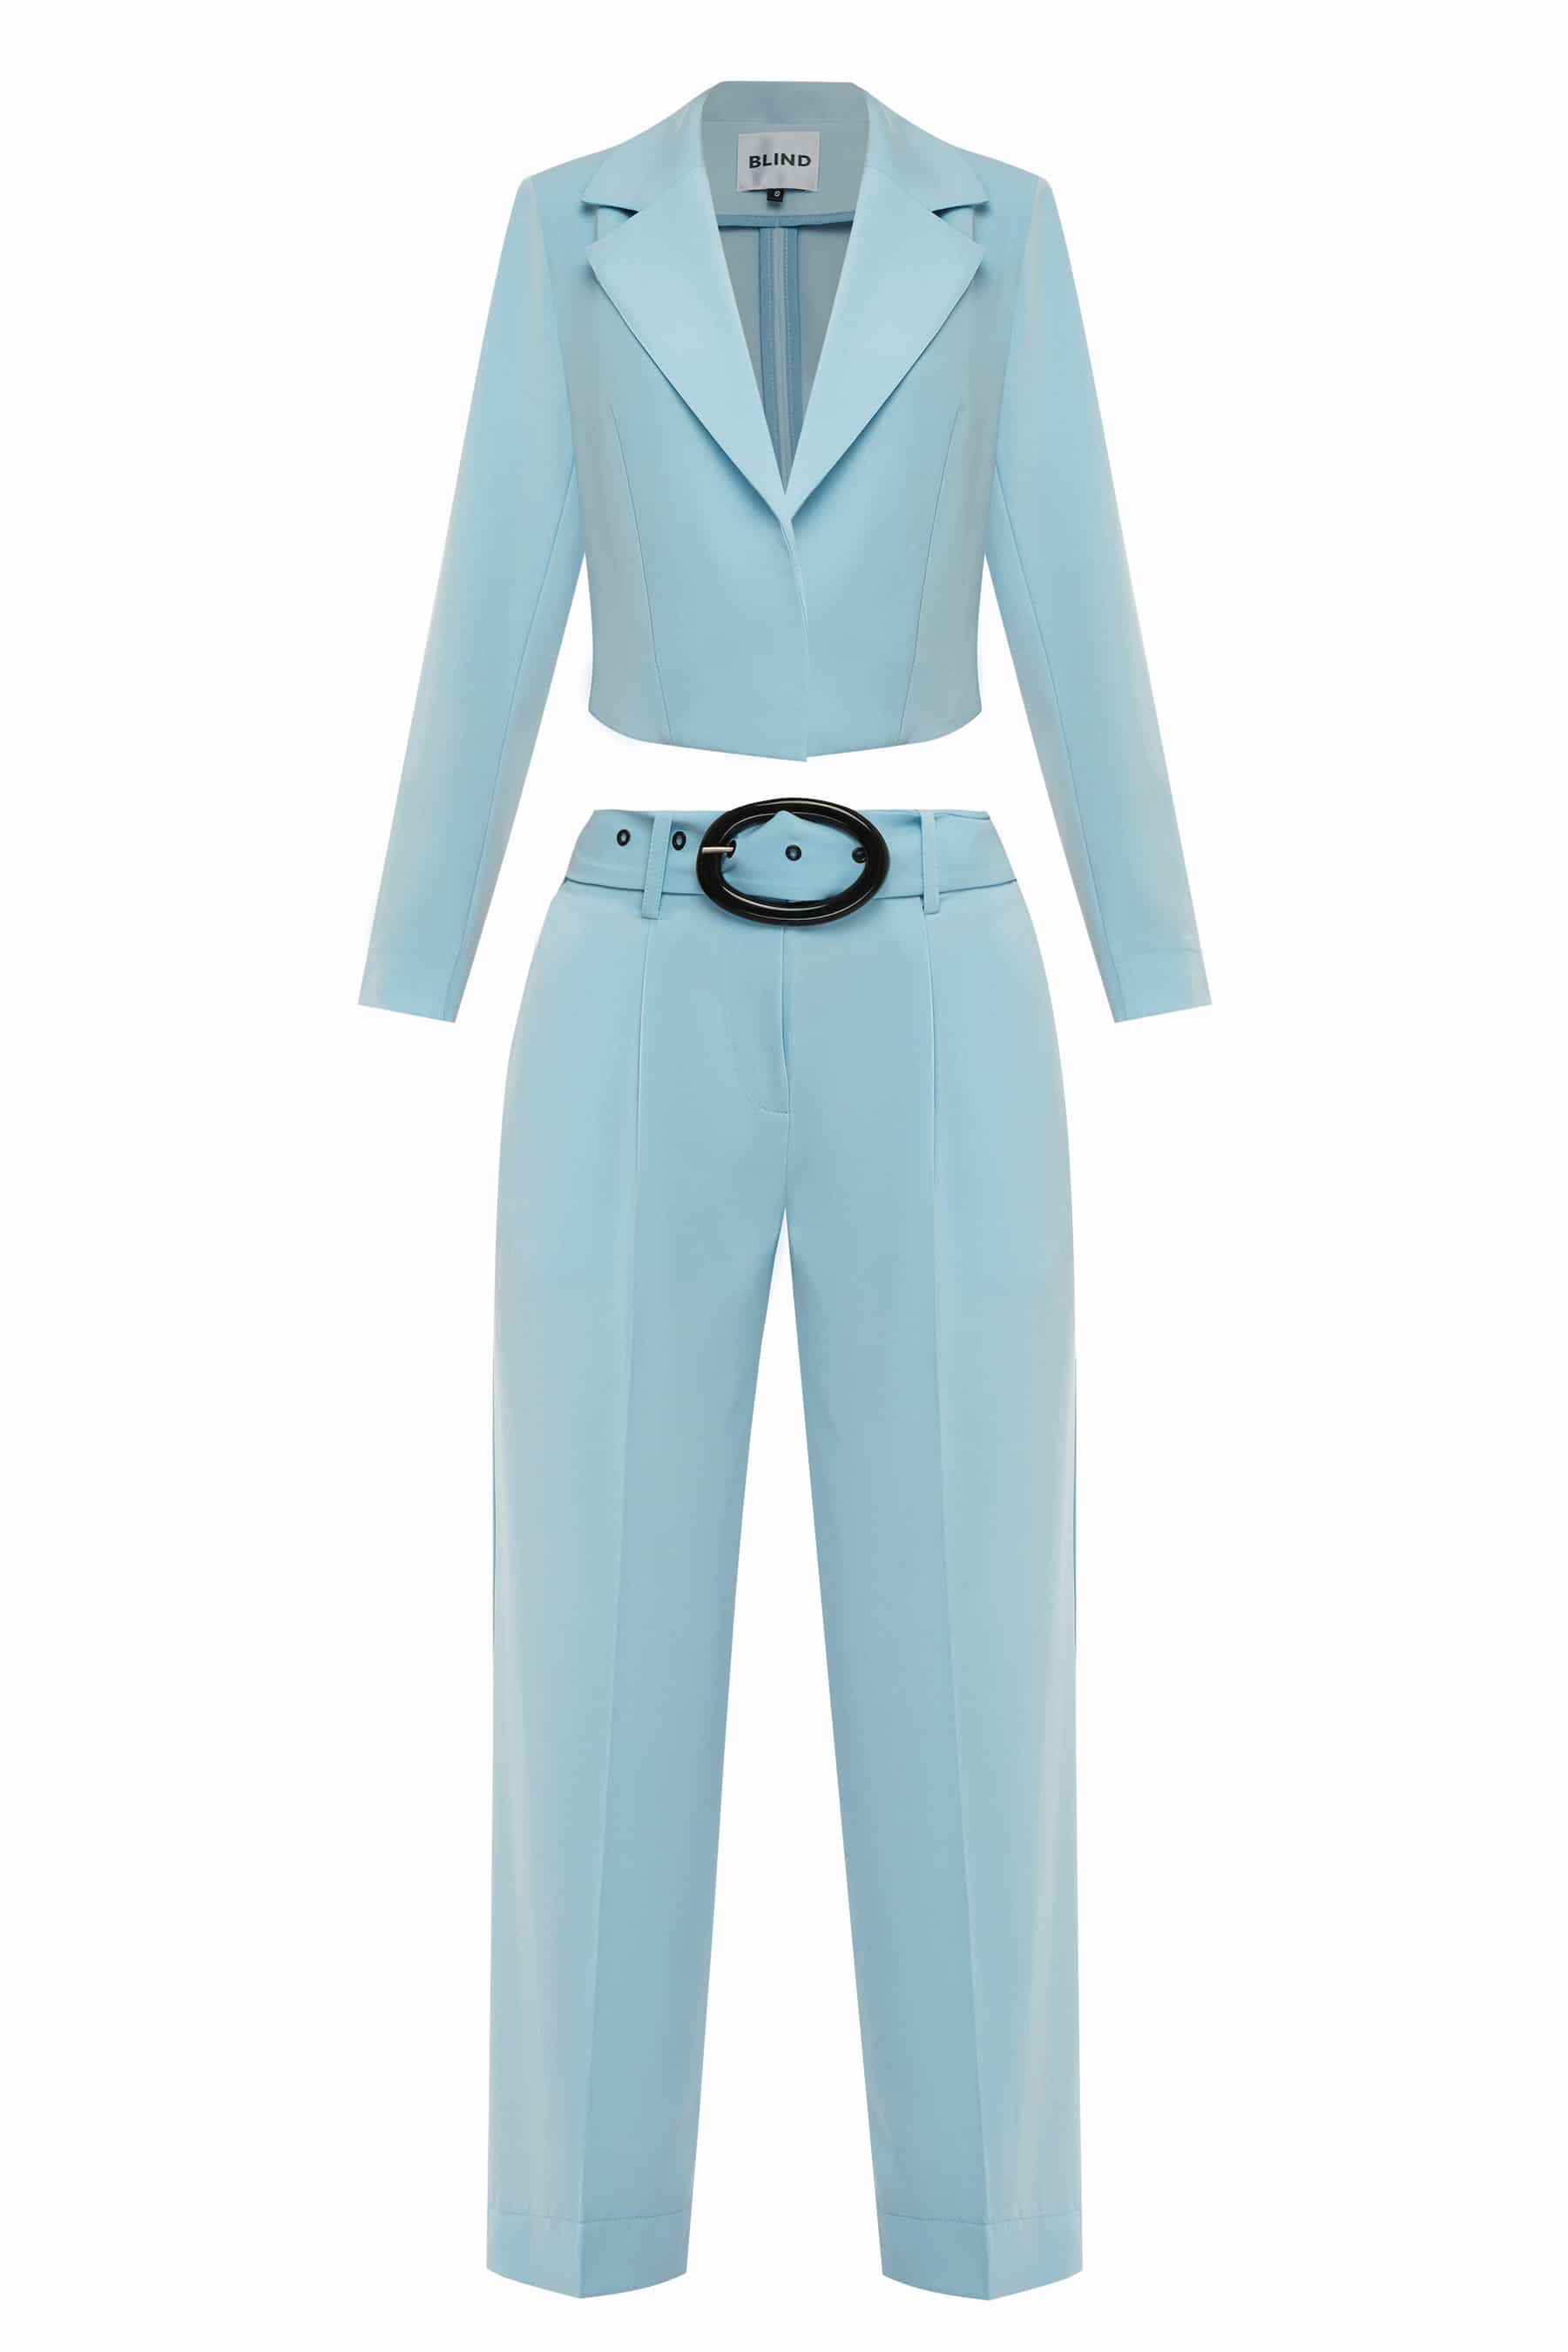 Голубой брючный костюм с укороченным пиджаком и поясом в комплекте